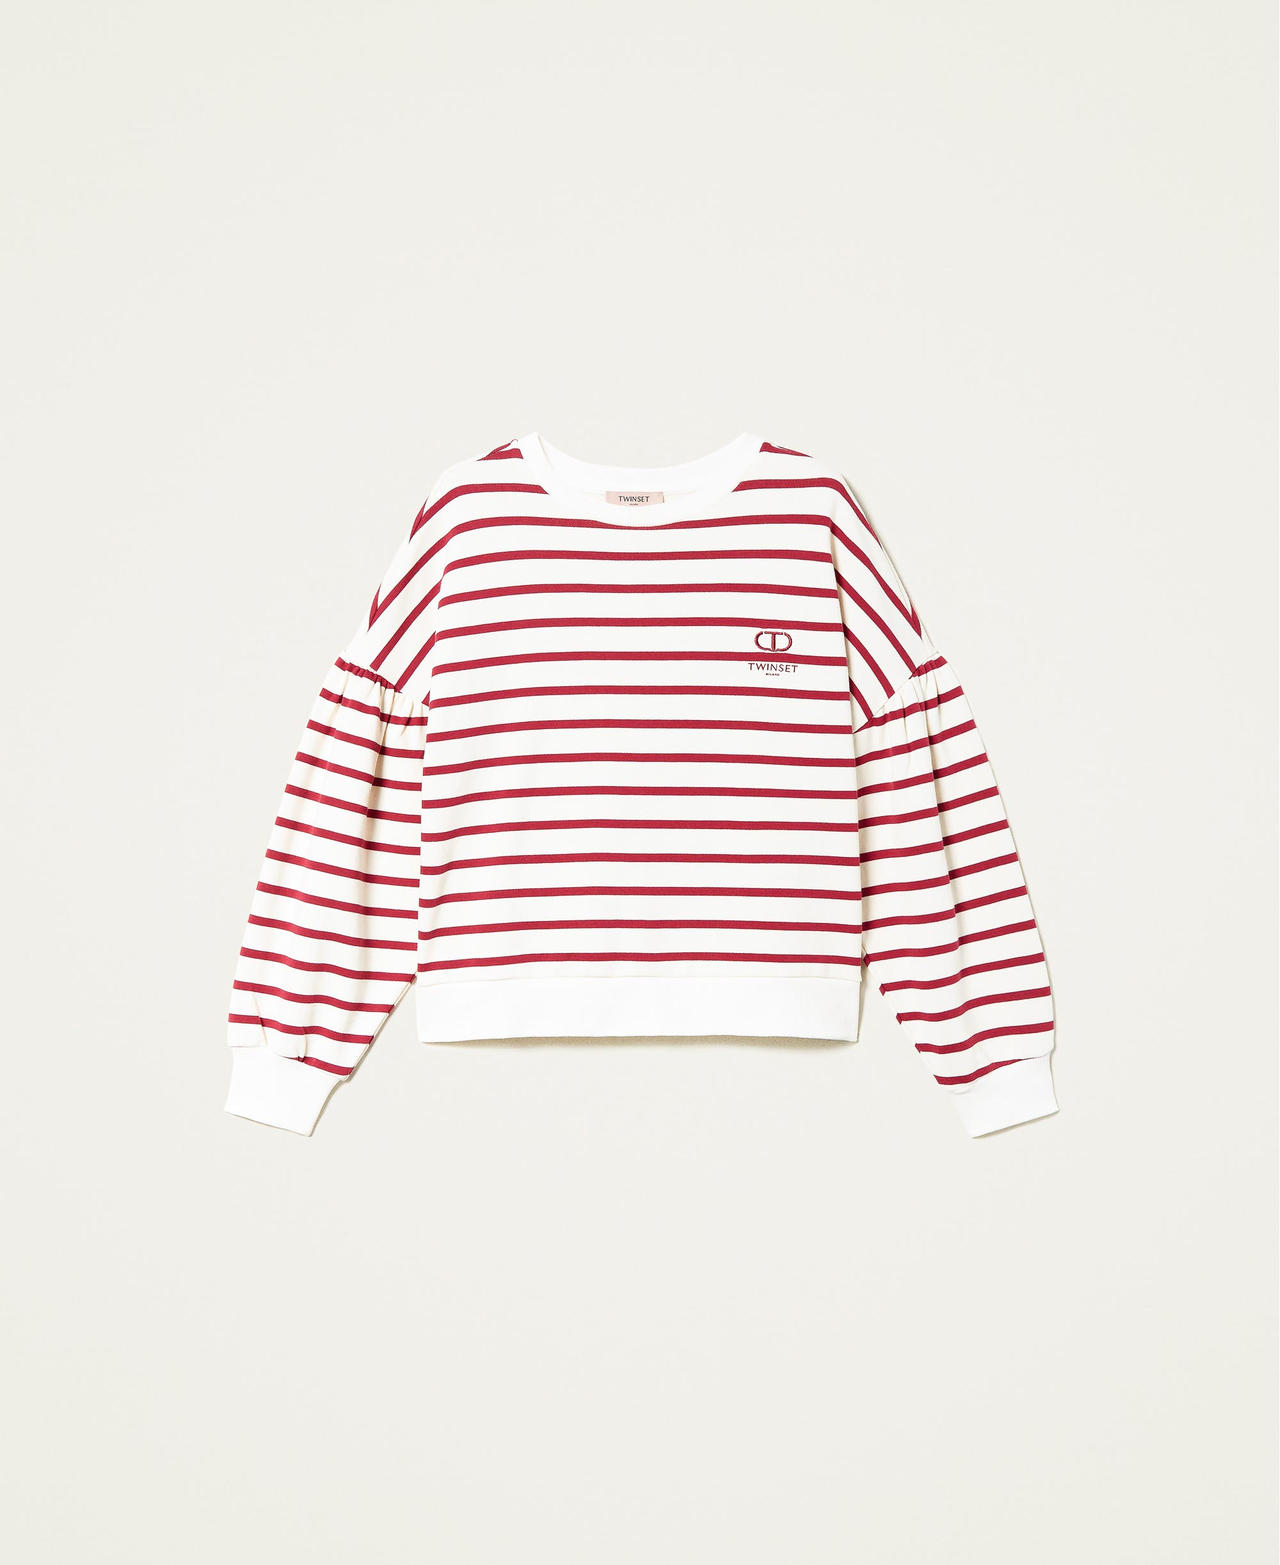 Striped sweatshirt with logo "Snow" White / Grape Stripe Woman 222TP2133-0S